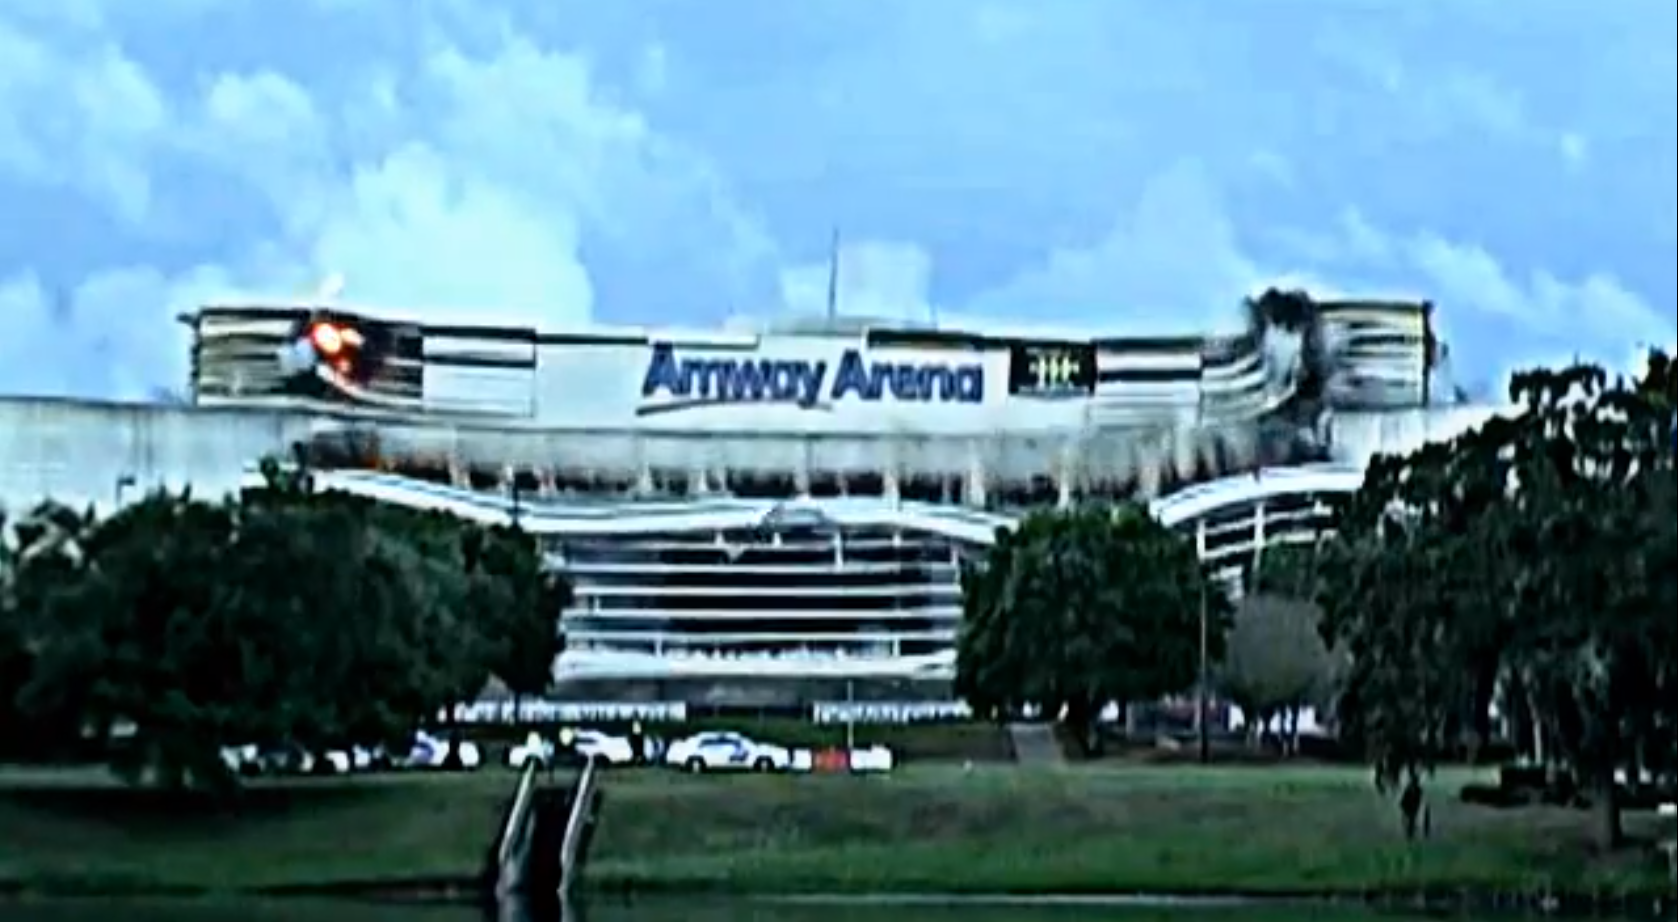 AFL-laget Orlando Predatorns har haft sina hemmamatcher på Amway Arena.